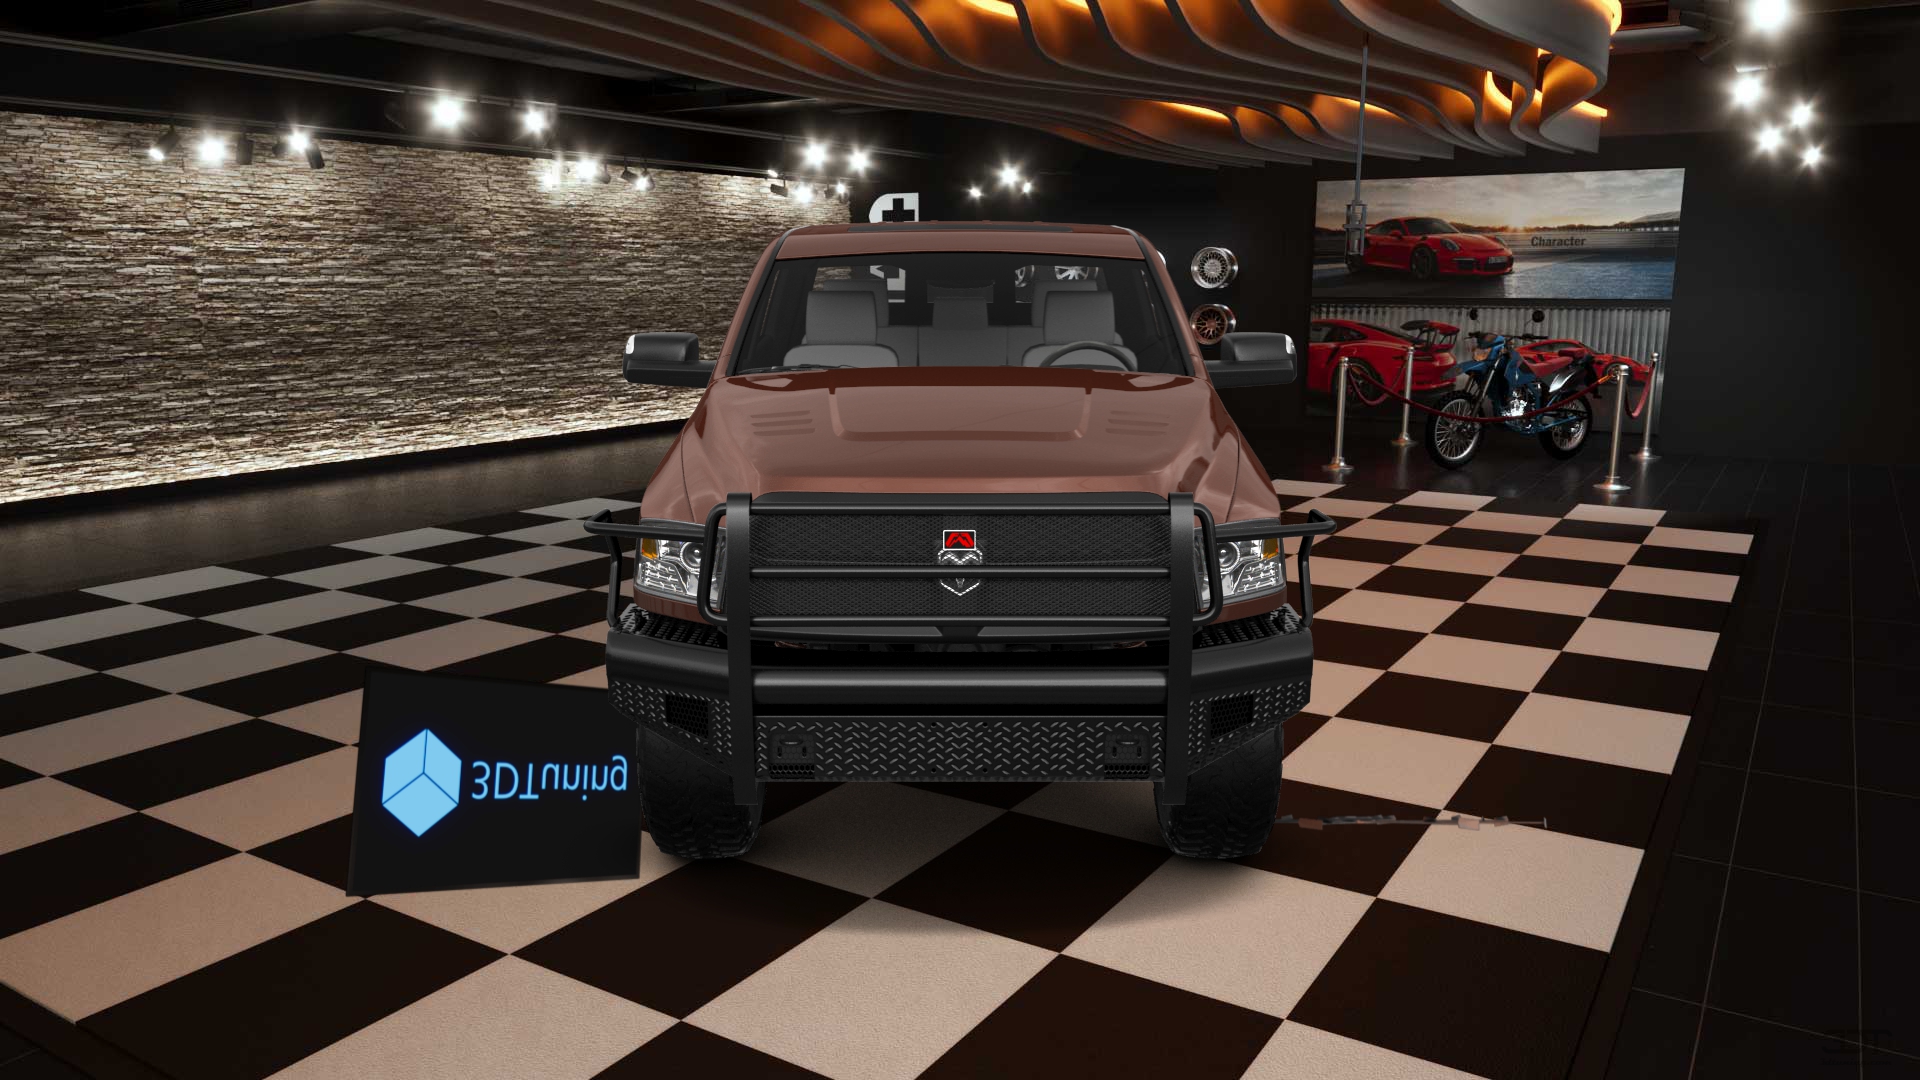 Dodge Ram 2500 4 Door Truck 2014